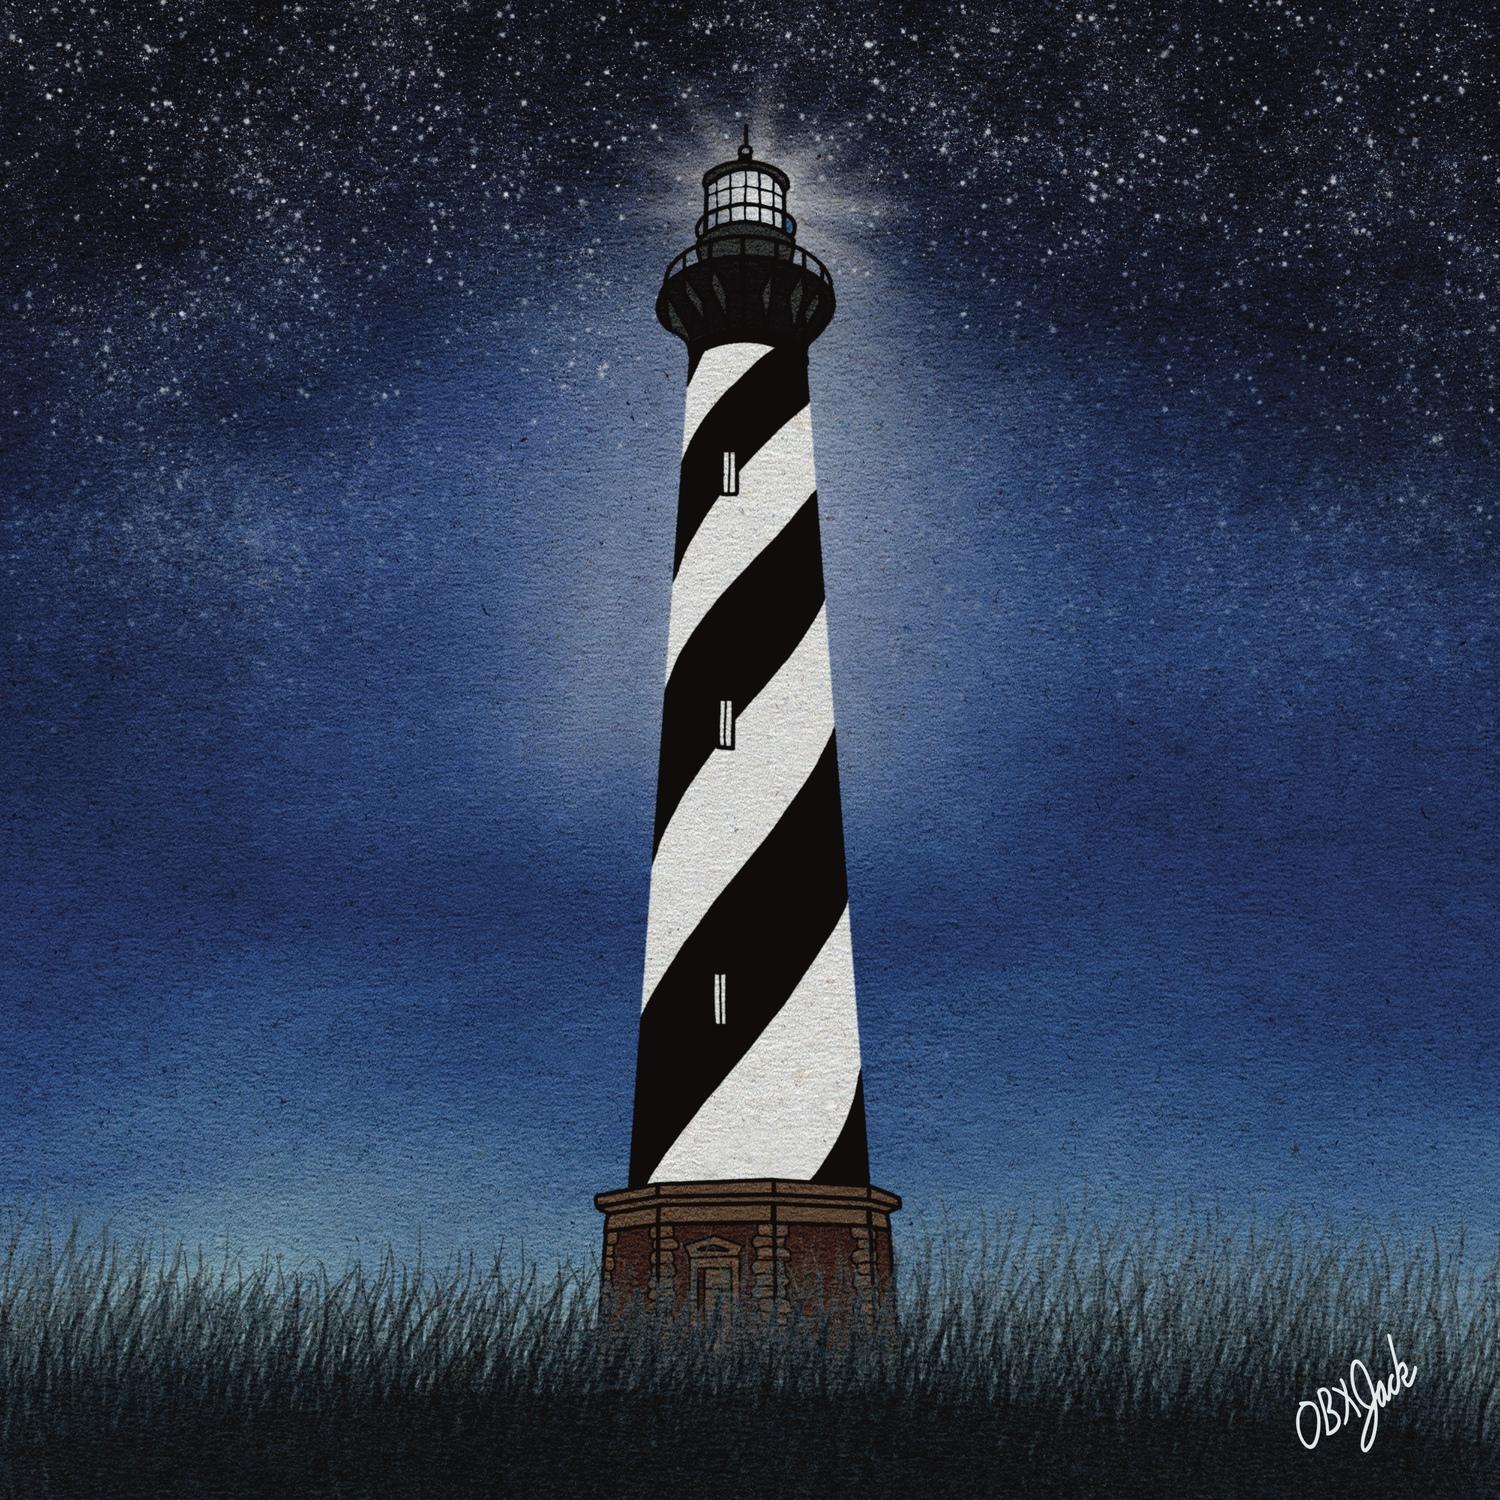 Lighthouse Art